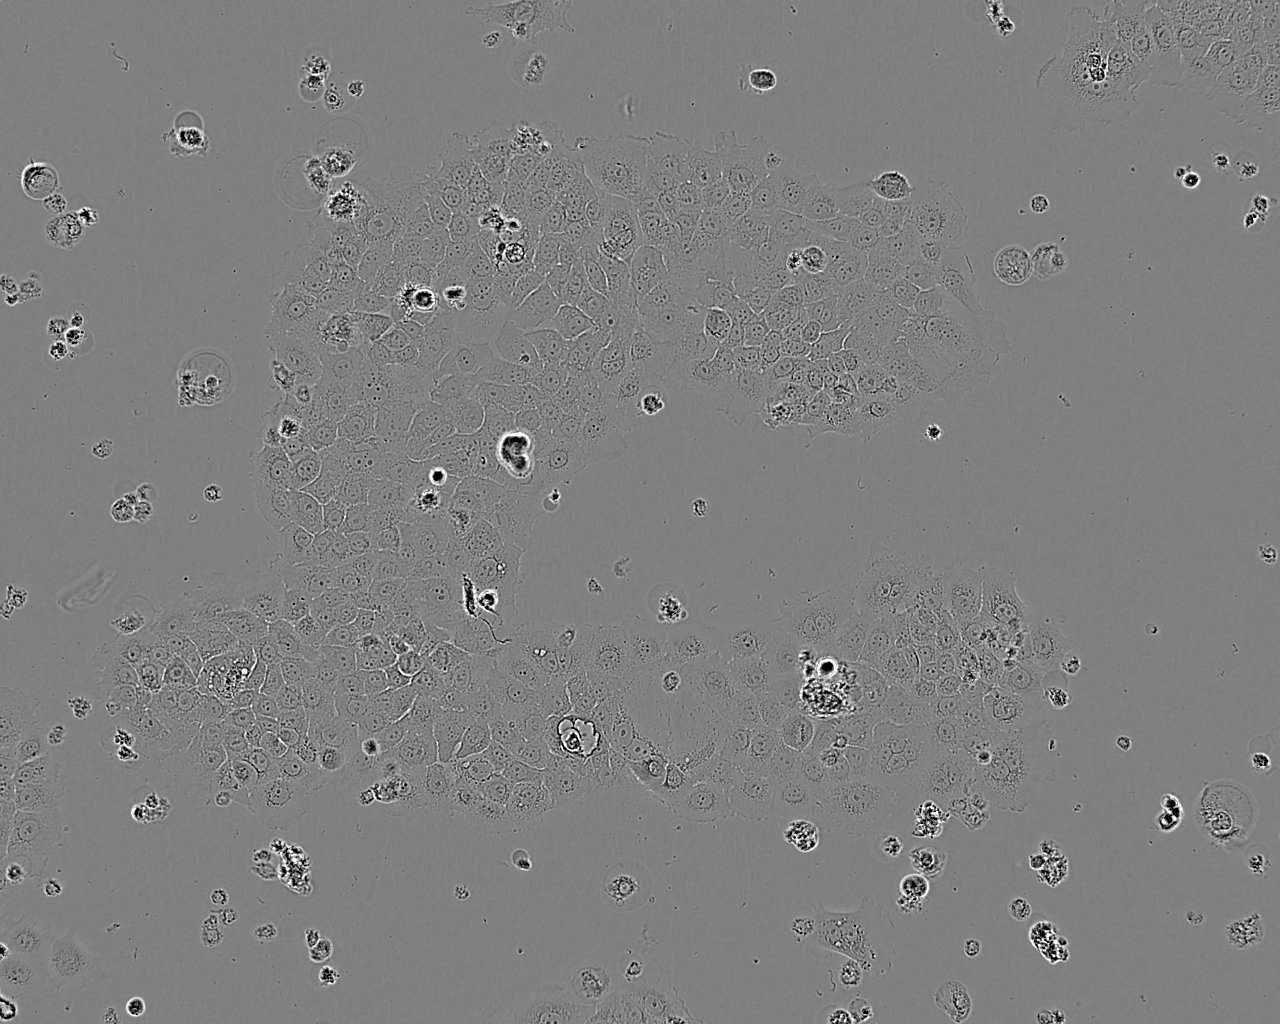 MeWo epithelioid cells人恶性黑色素瘤细胞系,MeWo epithelioid cells